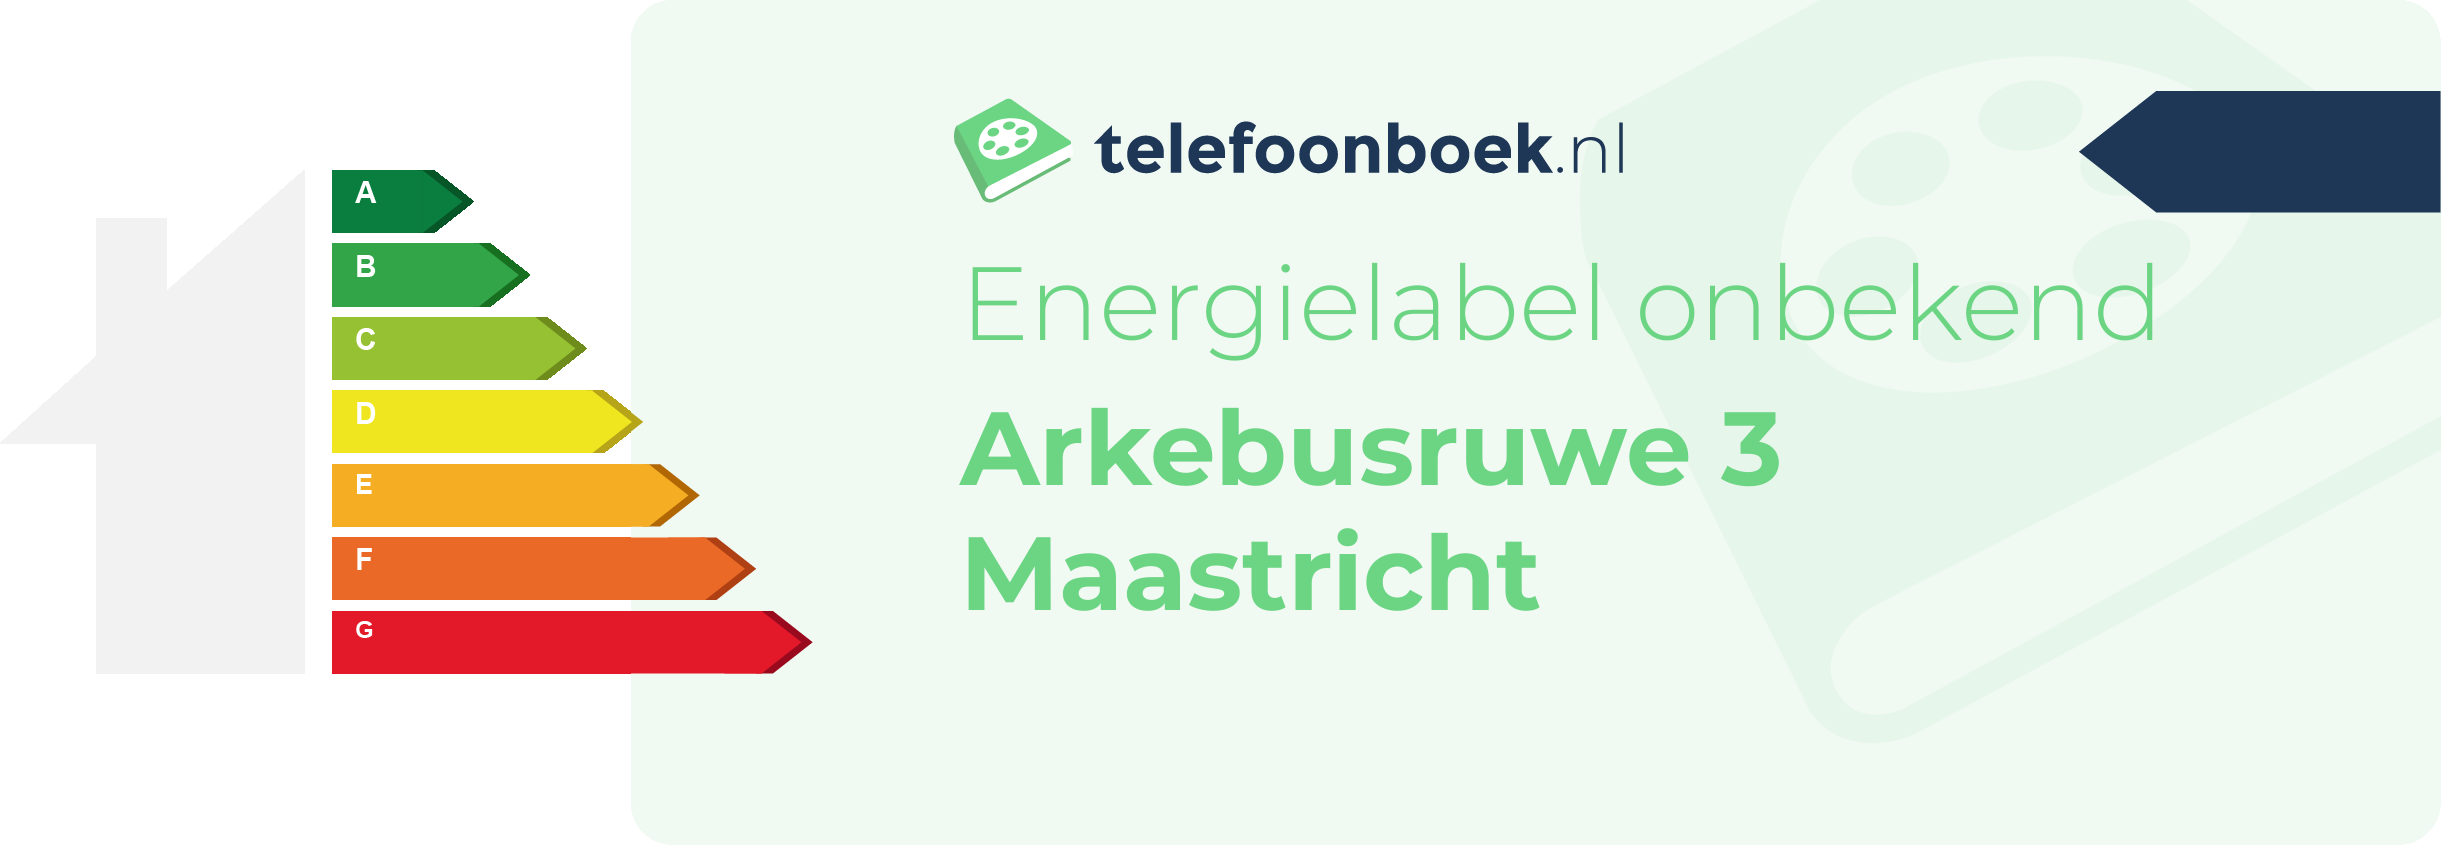 Energielabel Arkebusruwe 3 Maastricht